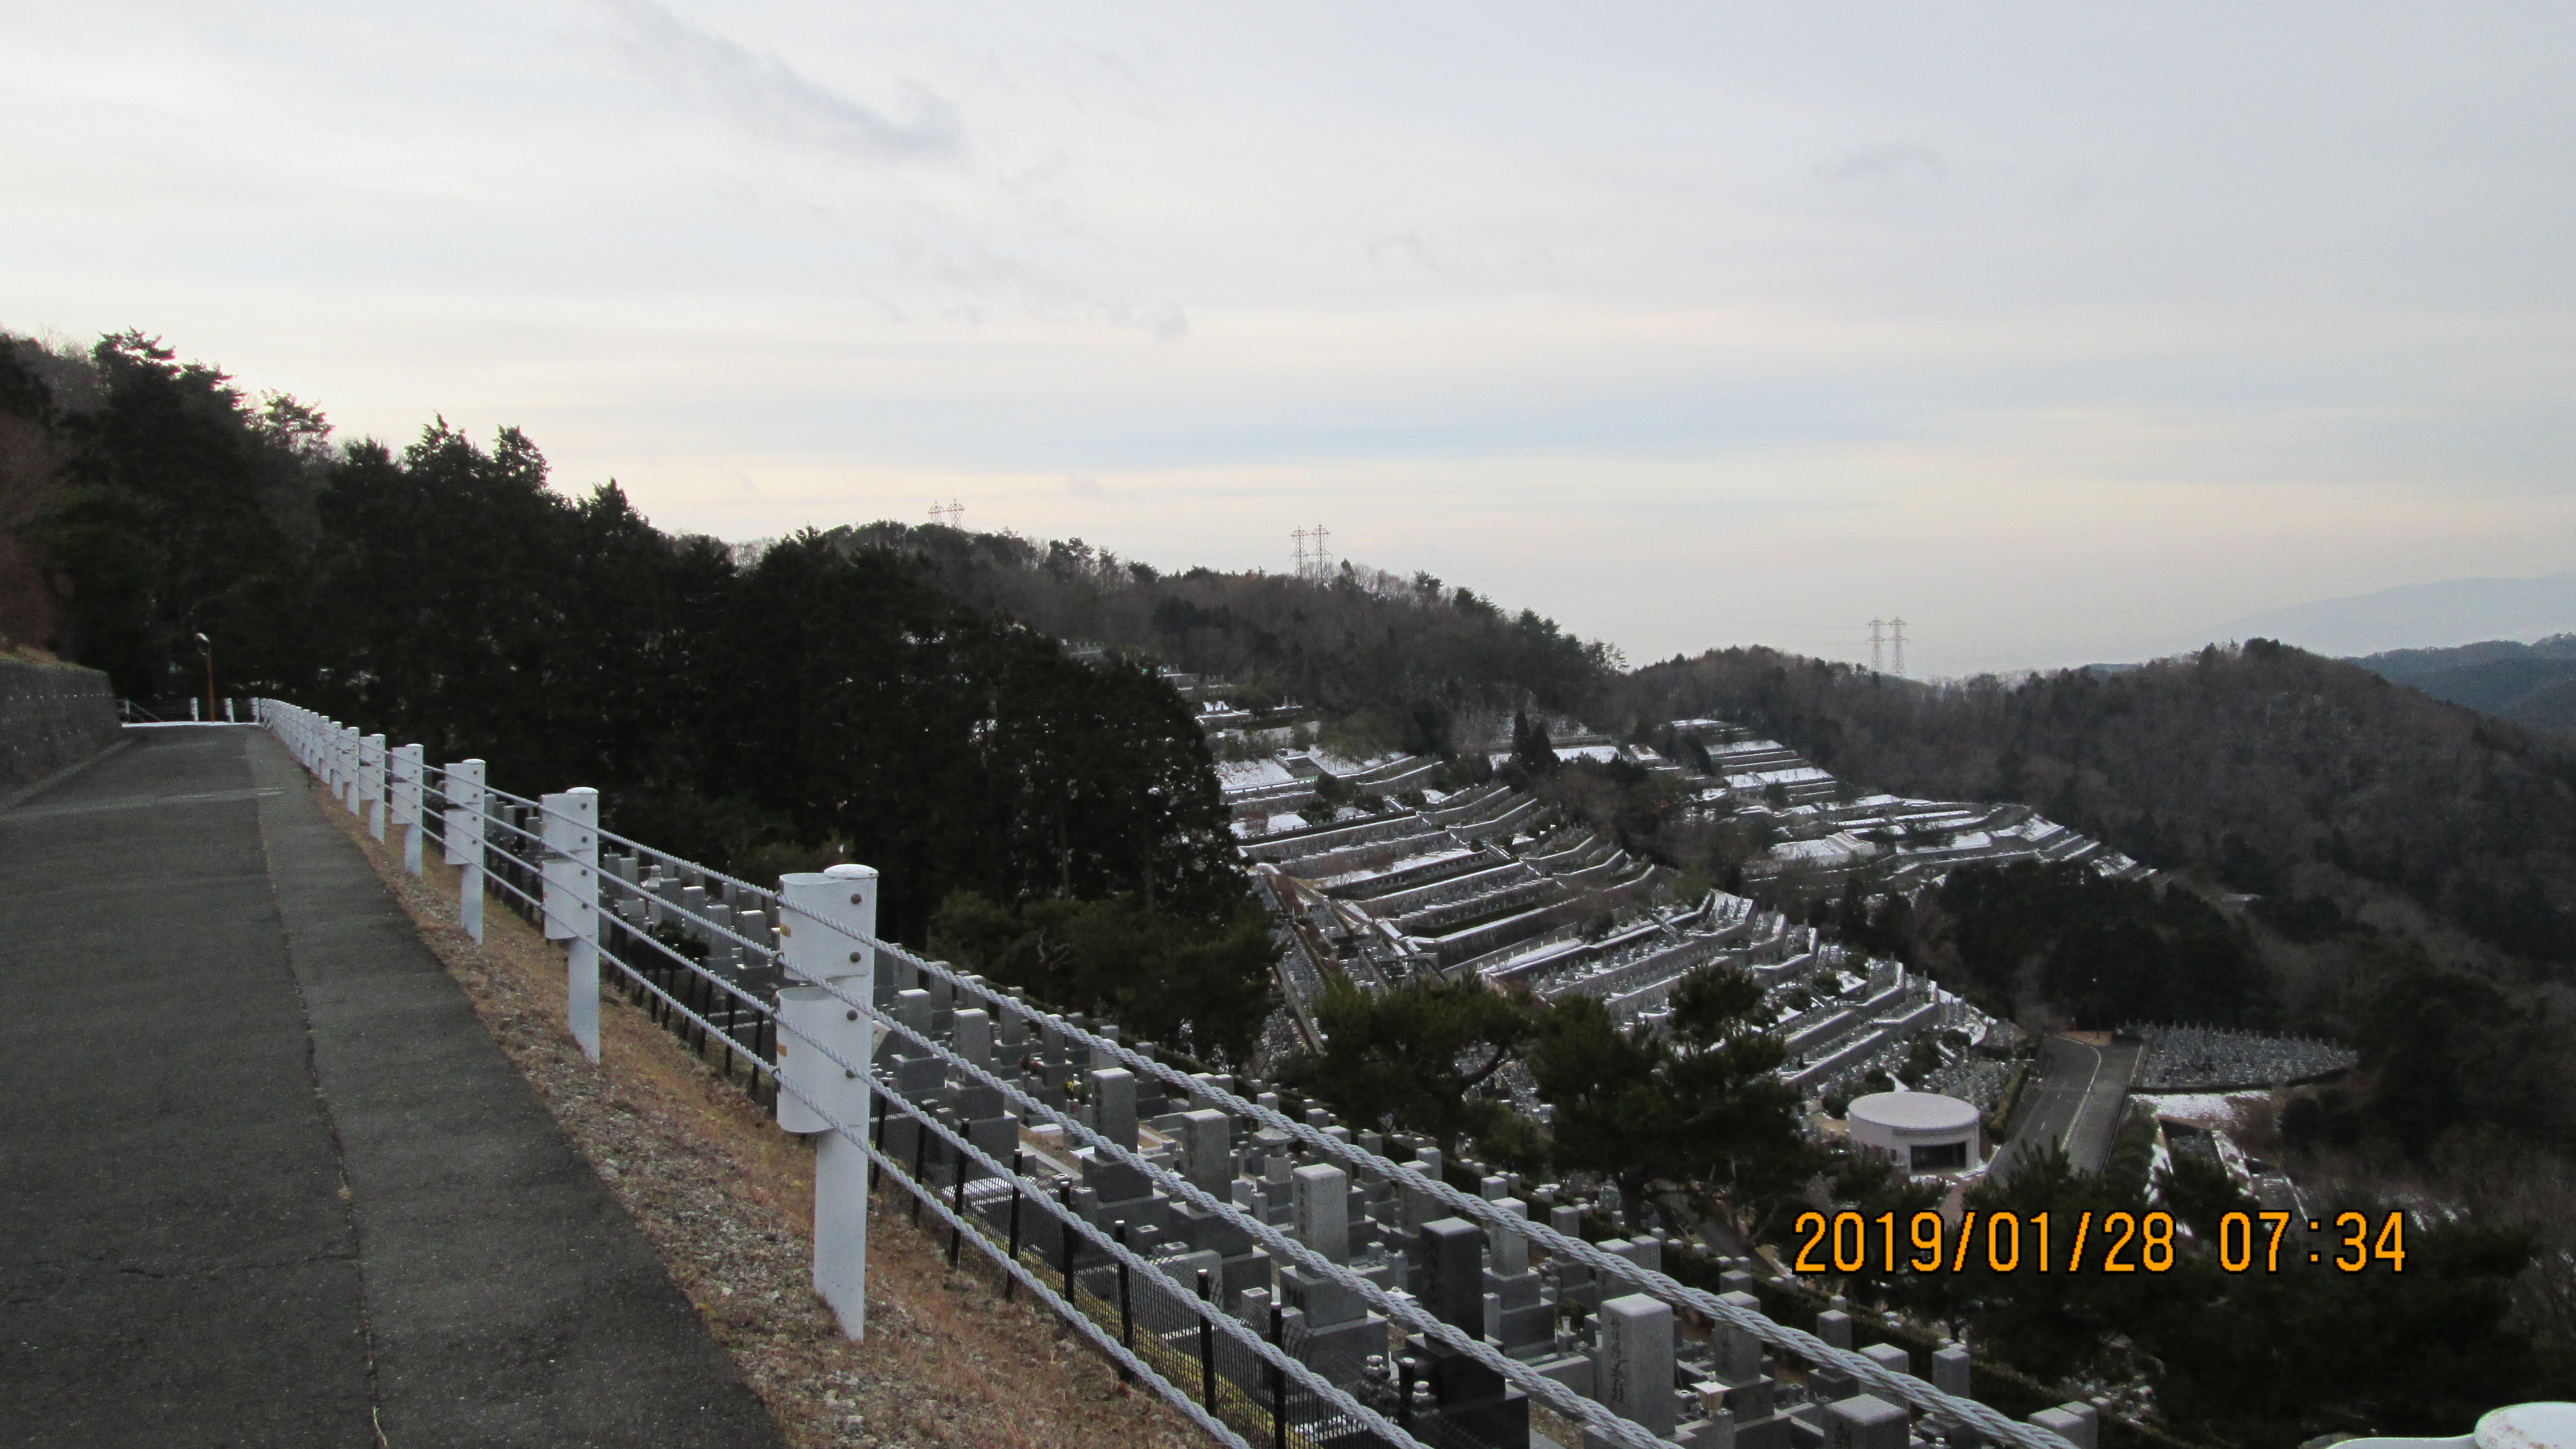 階段墓所・1番枝道風景